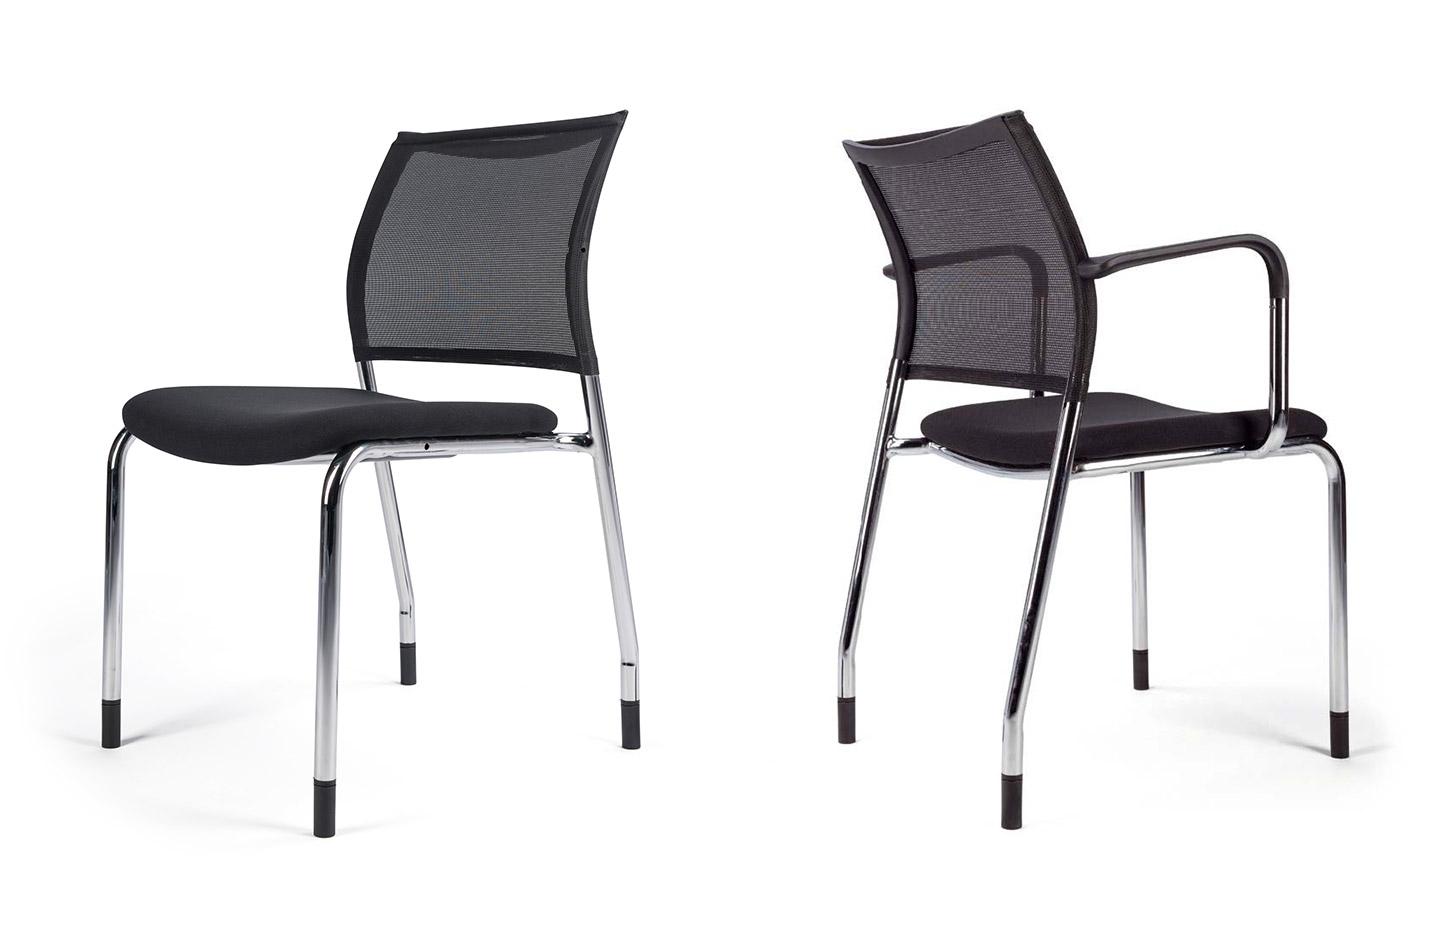 Siège de réunion dossier résille noir et assise tissu noir, Made in France, gamme Pontis, France Bureau